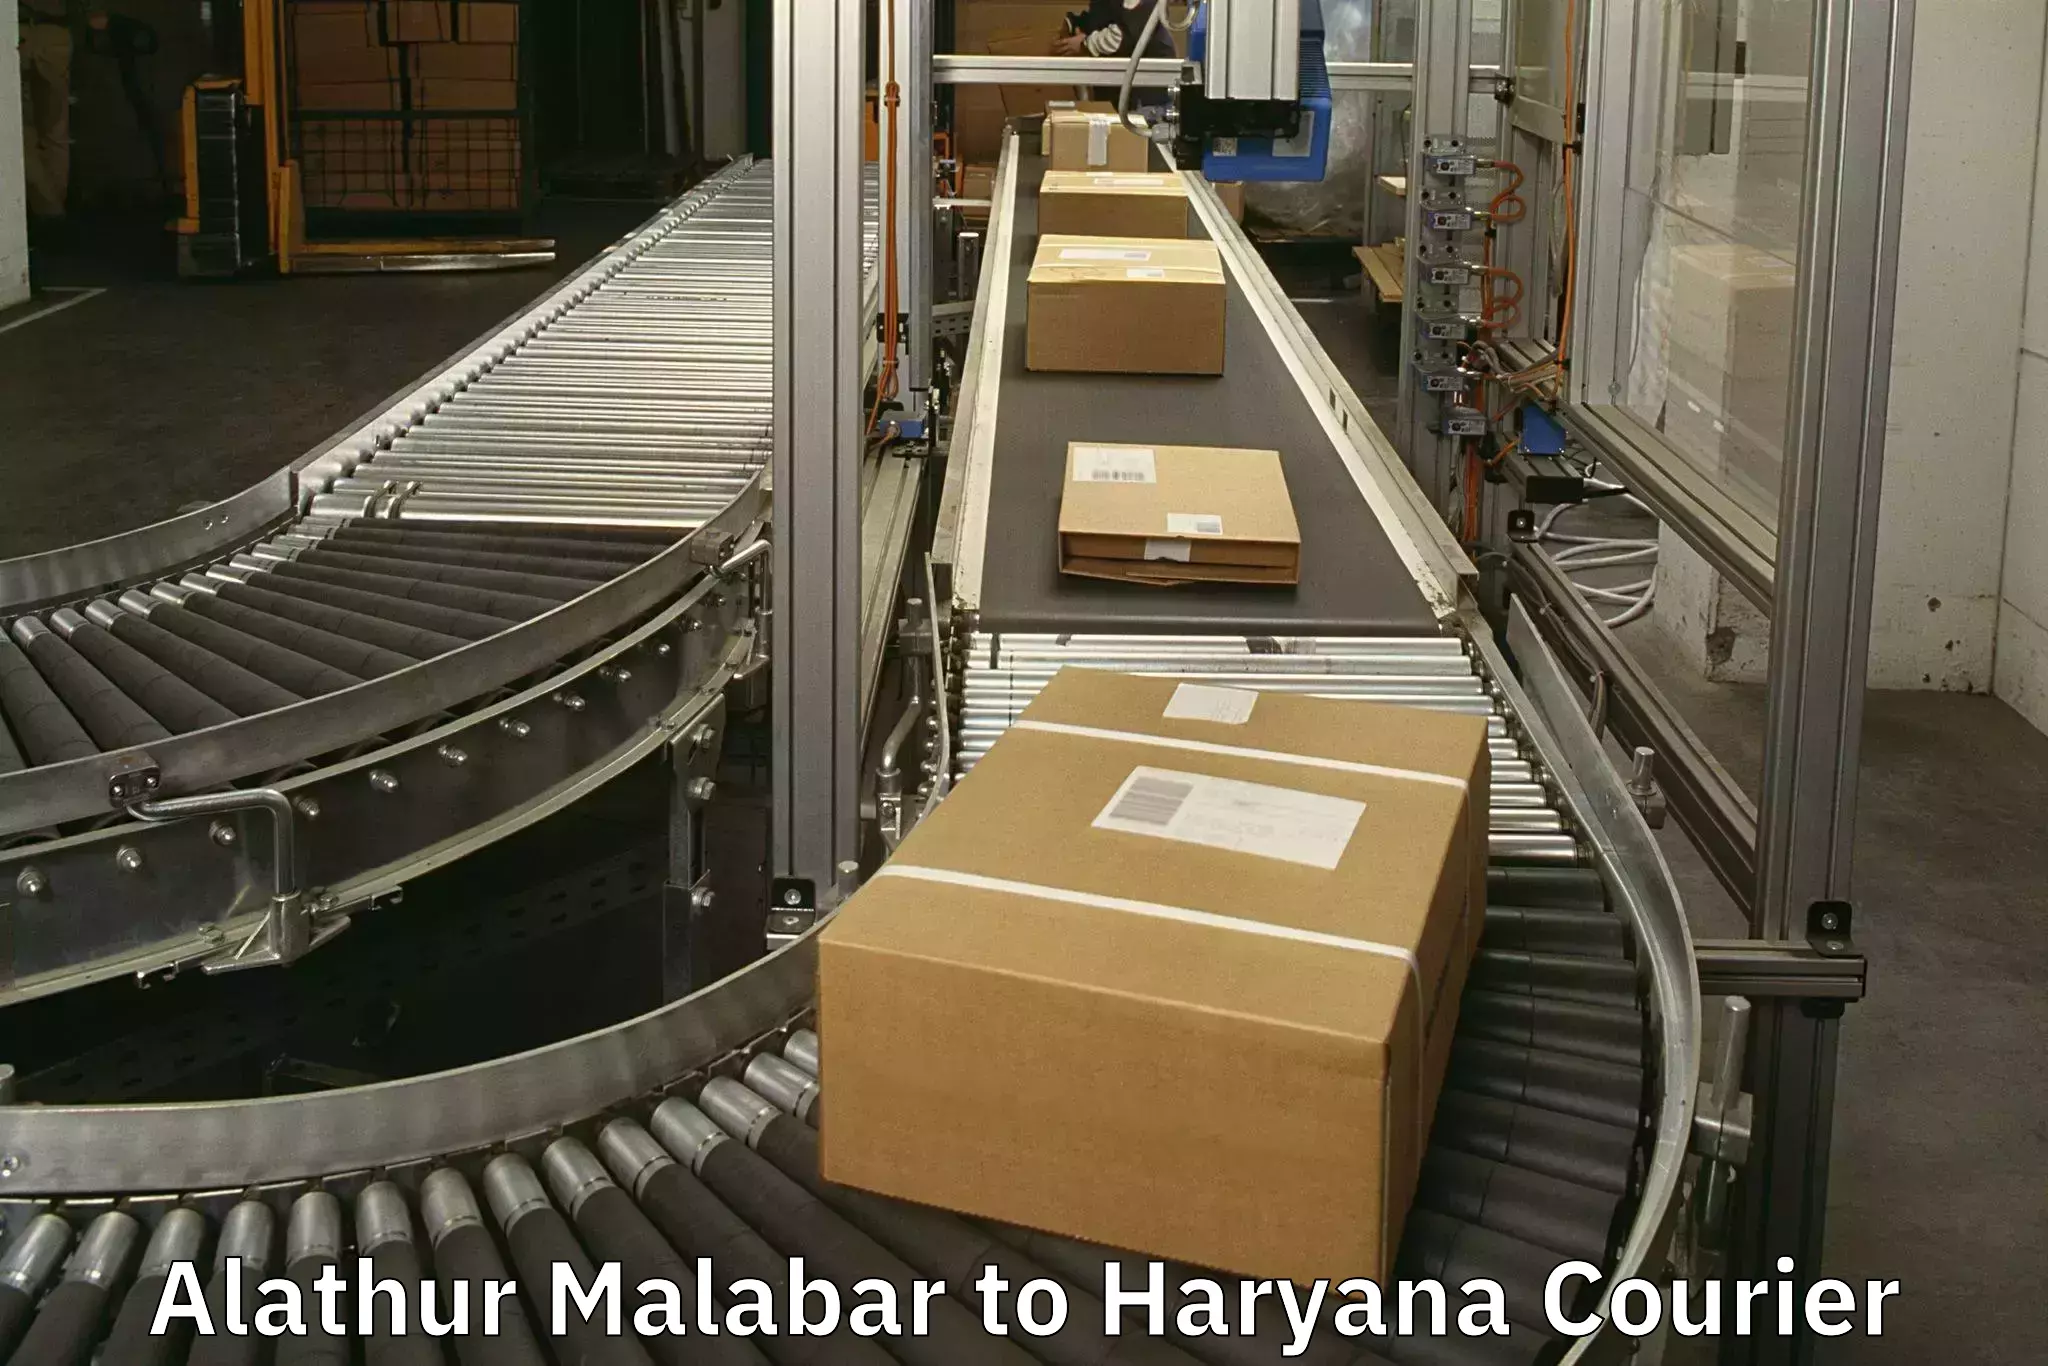 Baggage transport scheduler Alathur Malabar to Haryana